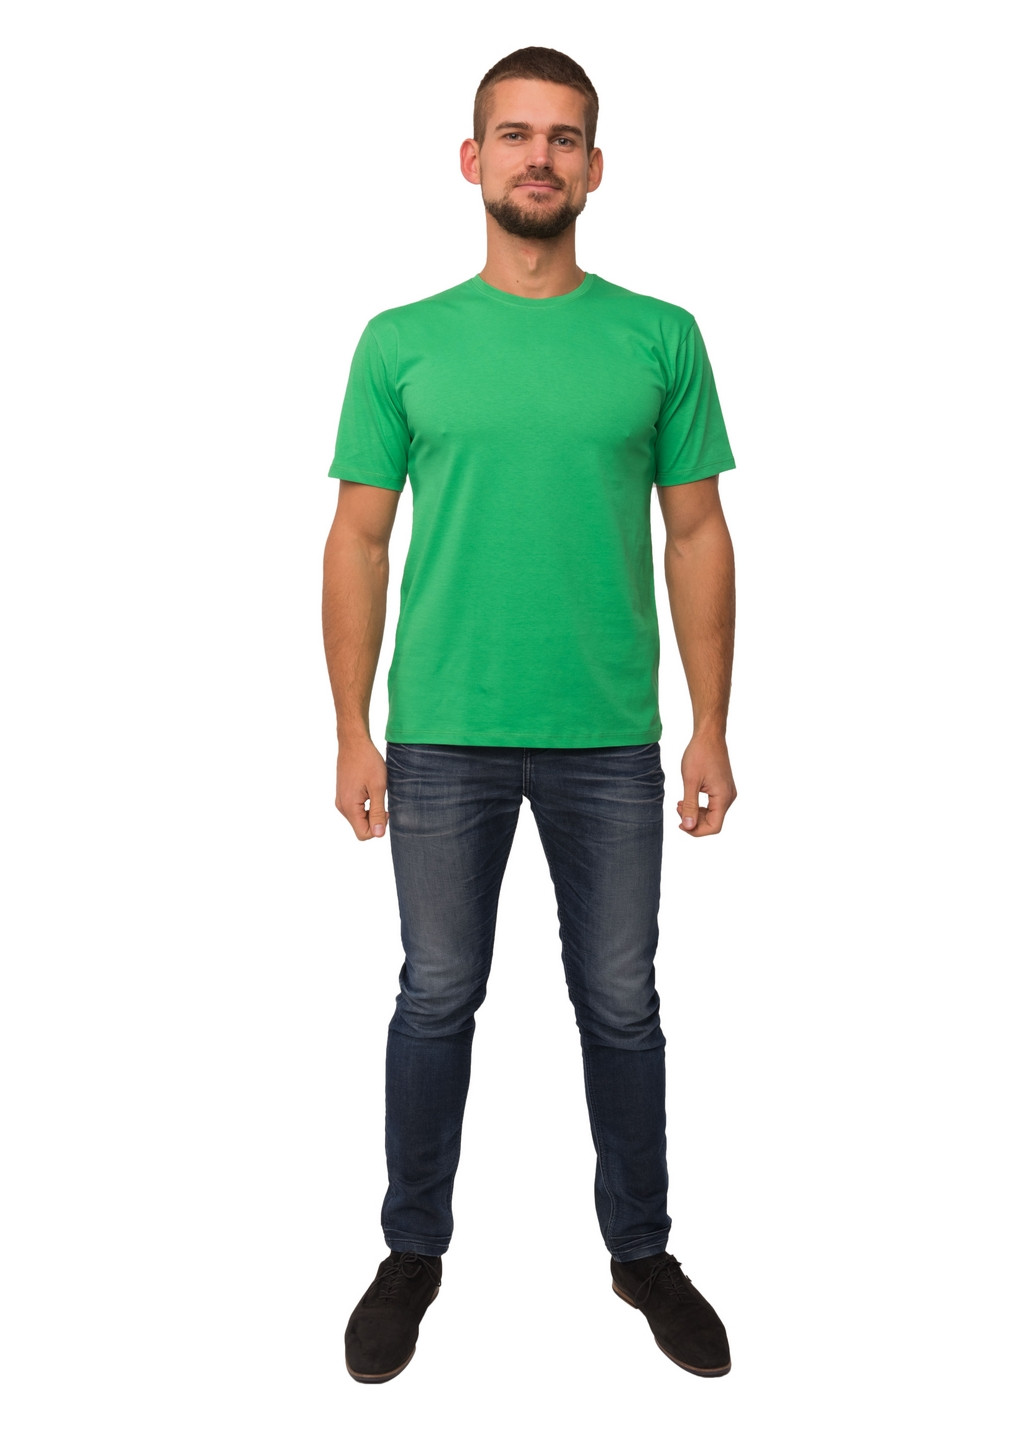 Зеленая футболка мужская Наталюкс 12-1343